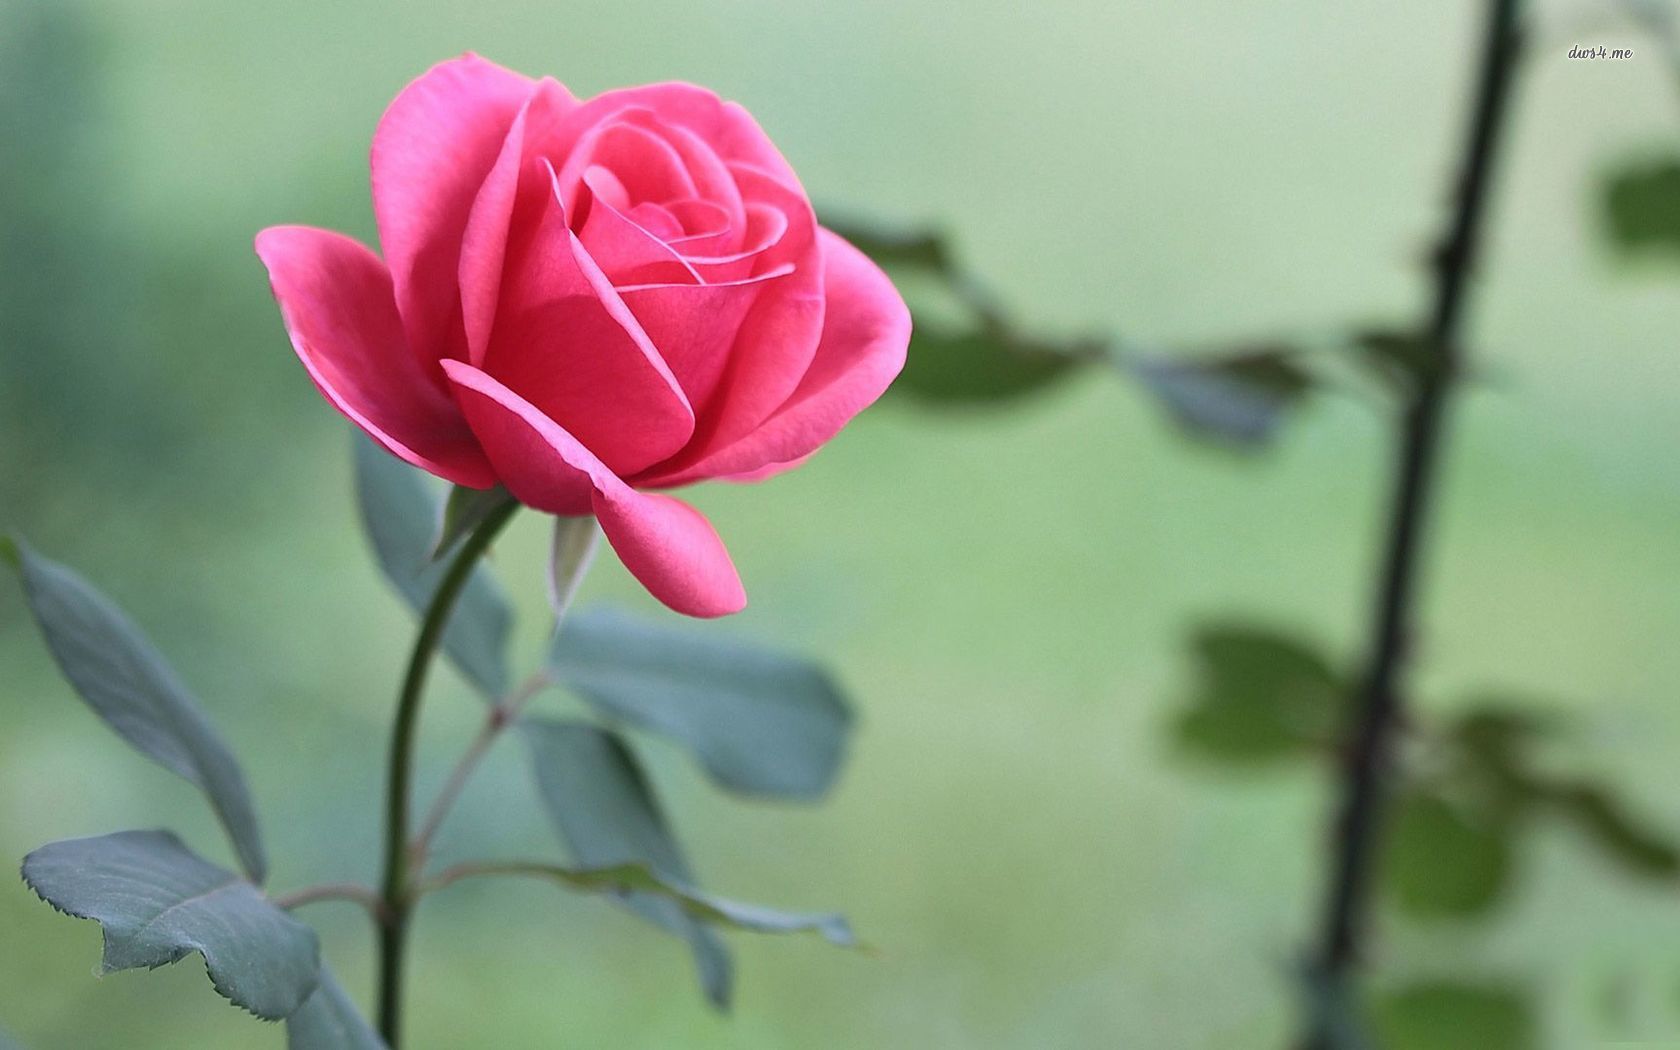 Khám phá vẻ đẹp tuyệt vời của những bông hoa hồng đẹp không còn chỉ là mơ ước nữa. Hãy xem bức hình hoa hồng đẹp này, cảm nhận những đường nét tinh tế, màu sắc rực rỡ của những cánh hoa bay bổng, đem lại cho bạn sự tự tin và yêu đời hơn.